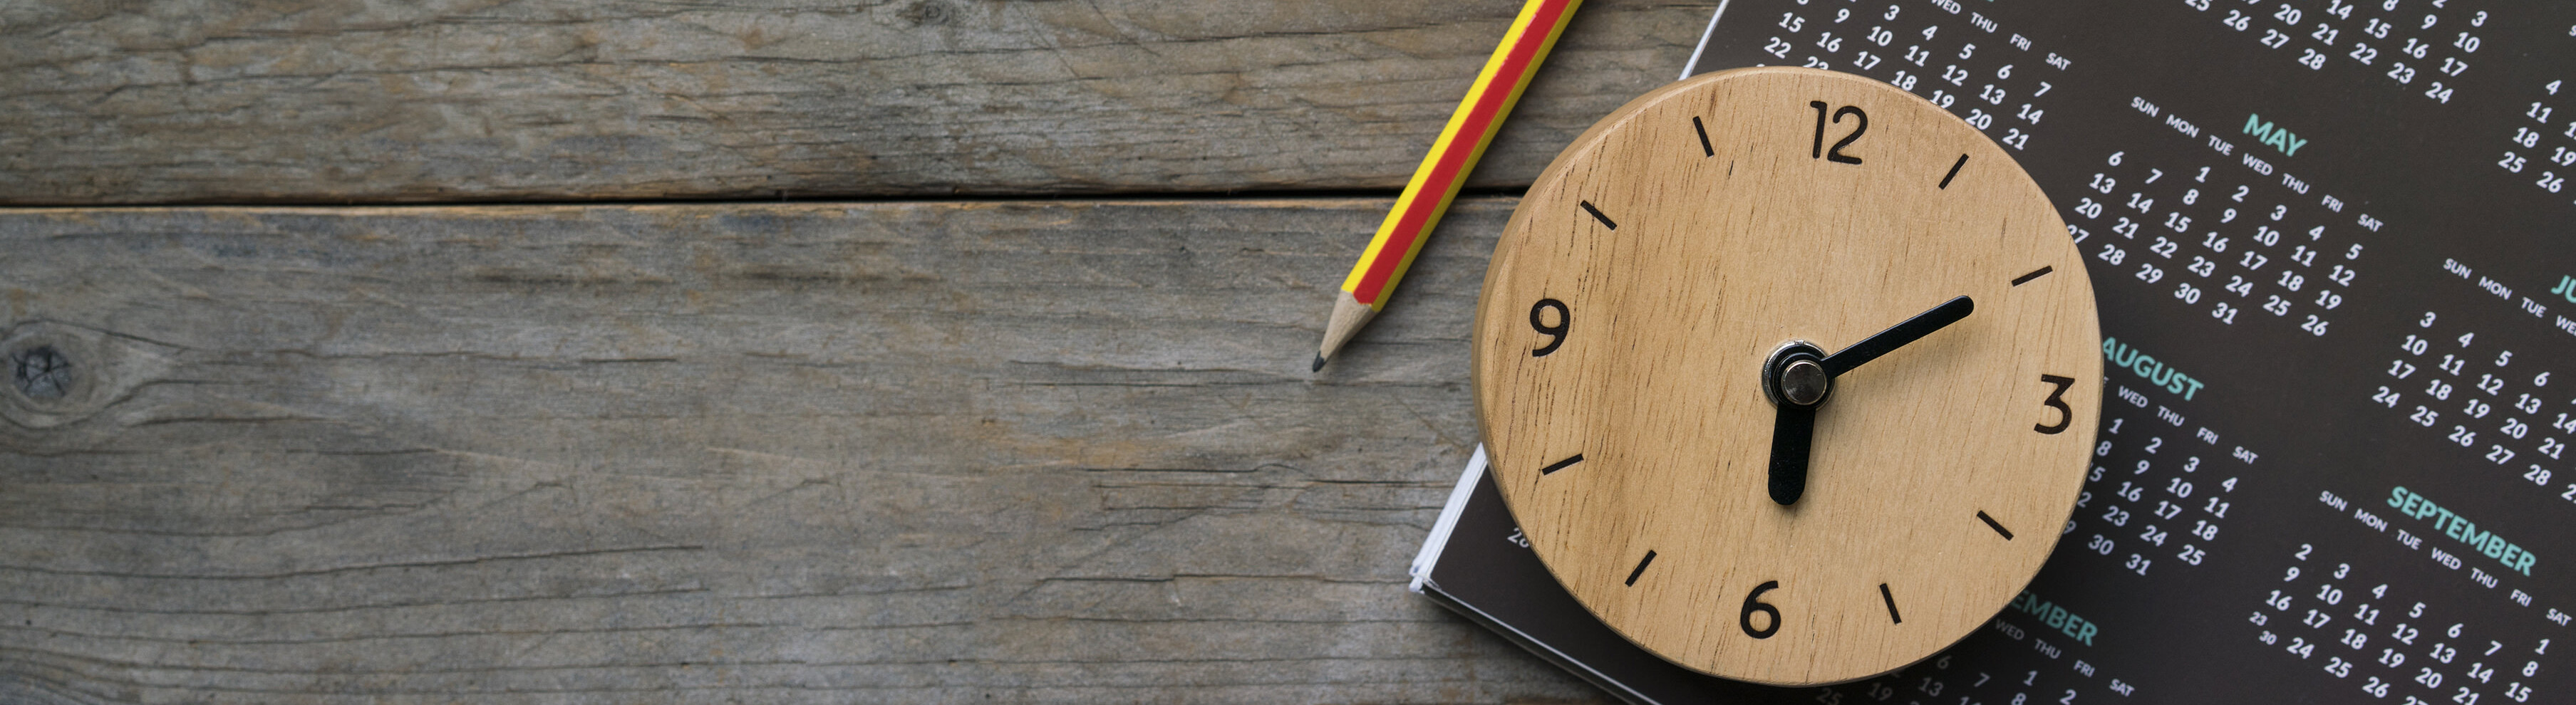 Auf einem Holztisch liegt ein Kalender neben dem ein Bleistift liegt und eine kleine Holzuhr